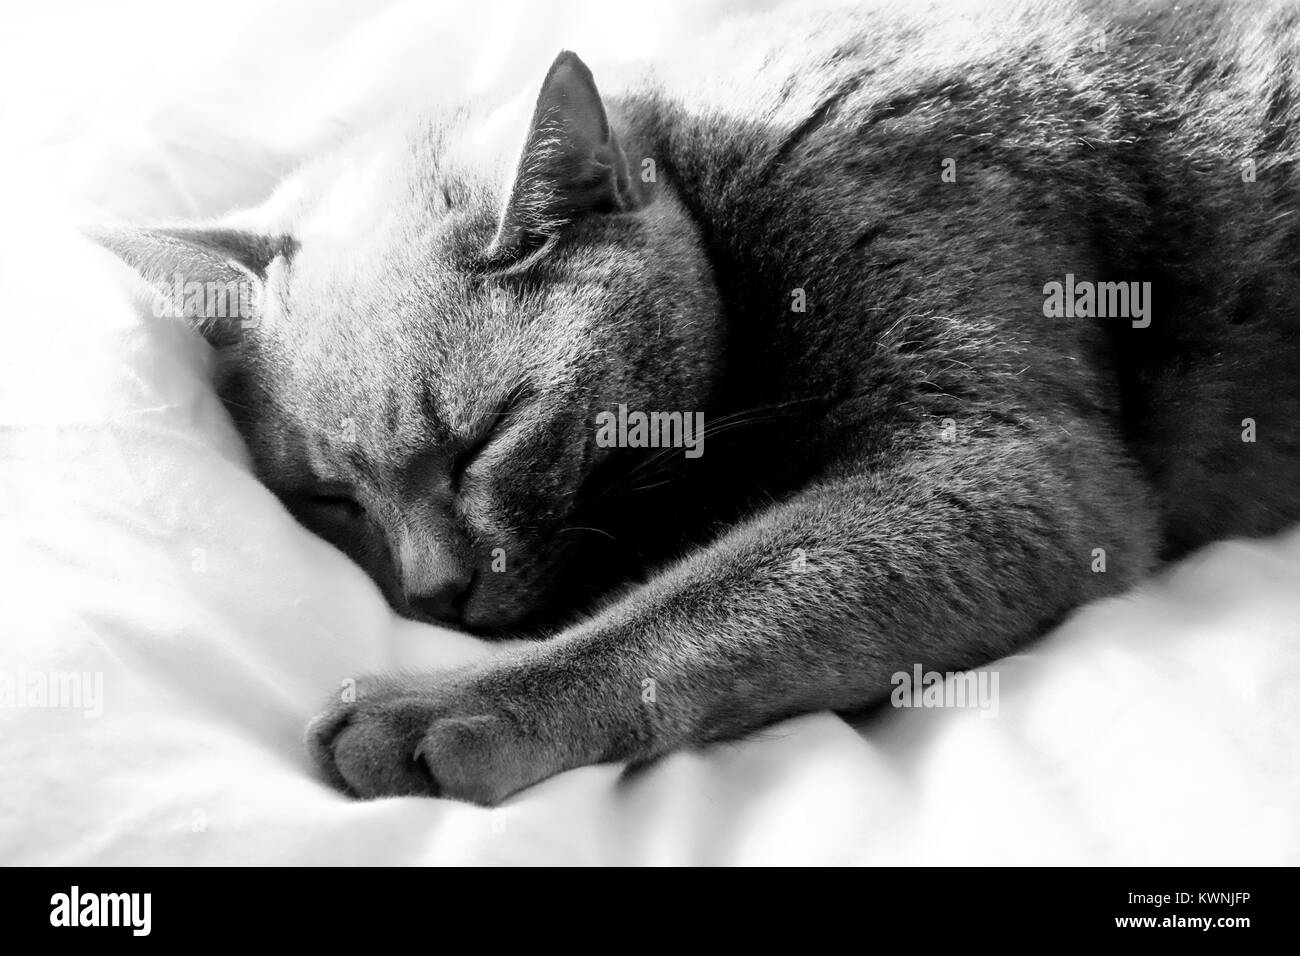 Close up of a British Blue Cat's face il est couché les yeux fermés dormir avec une patte tendue de sortir de l'accent le plus elle est proche de la c Banque D'Images